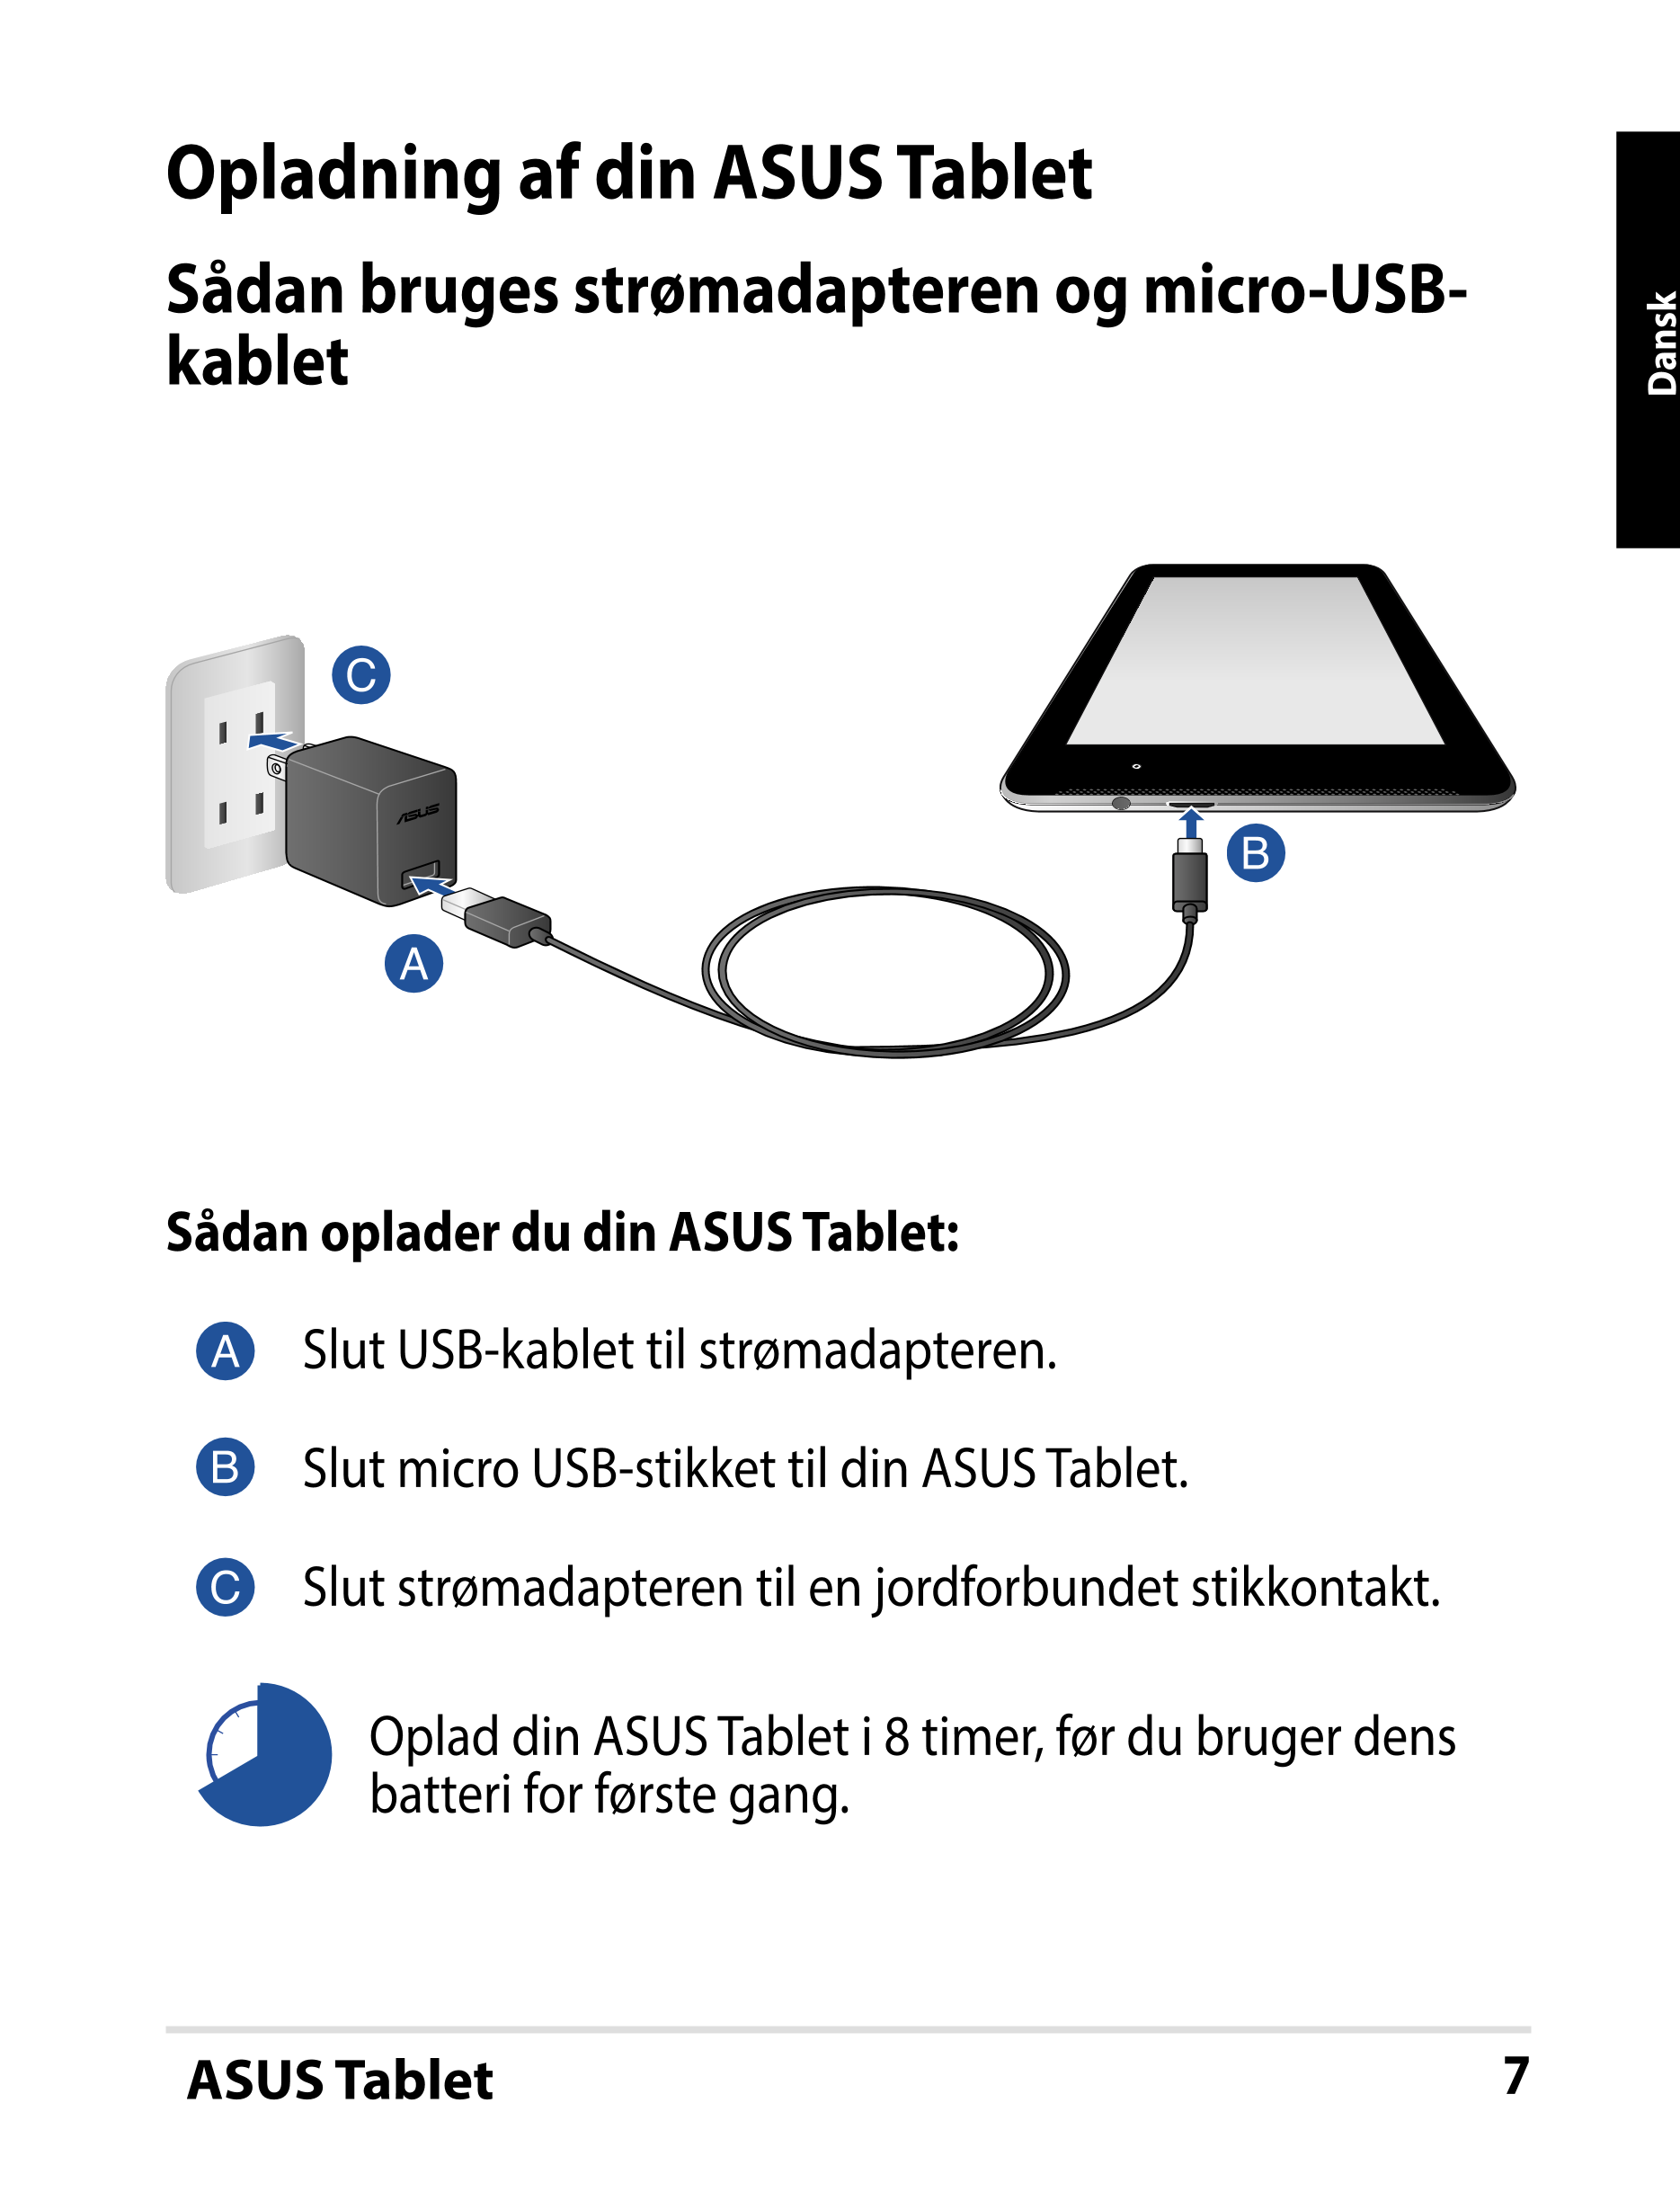 Opladning af din ASUS Tablet
Sådan bruges strømadapteren og micro-USB-
kablet Dansk
Sådan oplader du din ASUS Tablet:
Slut USB-k